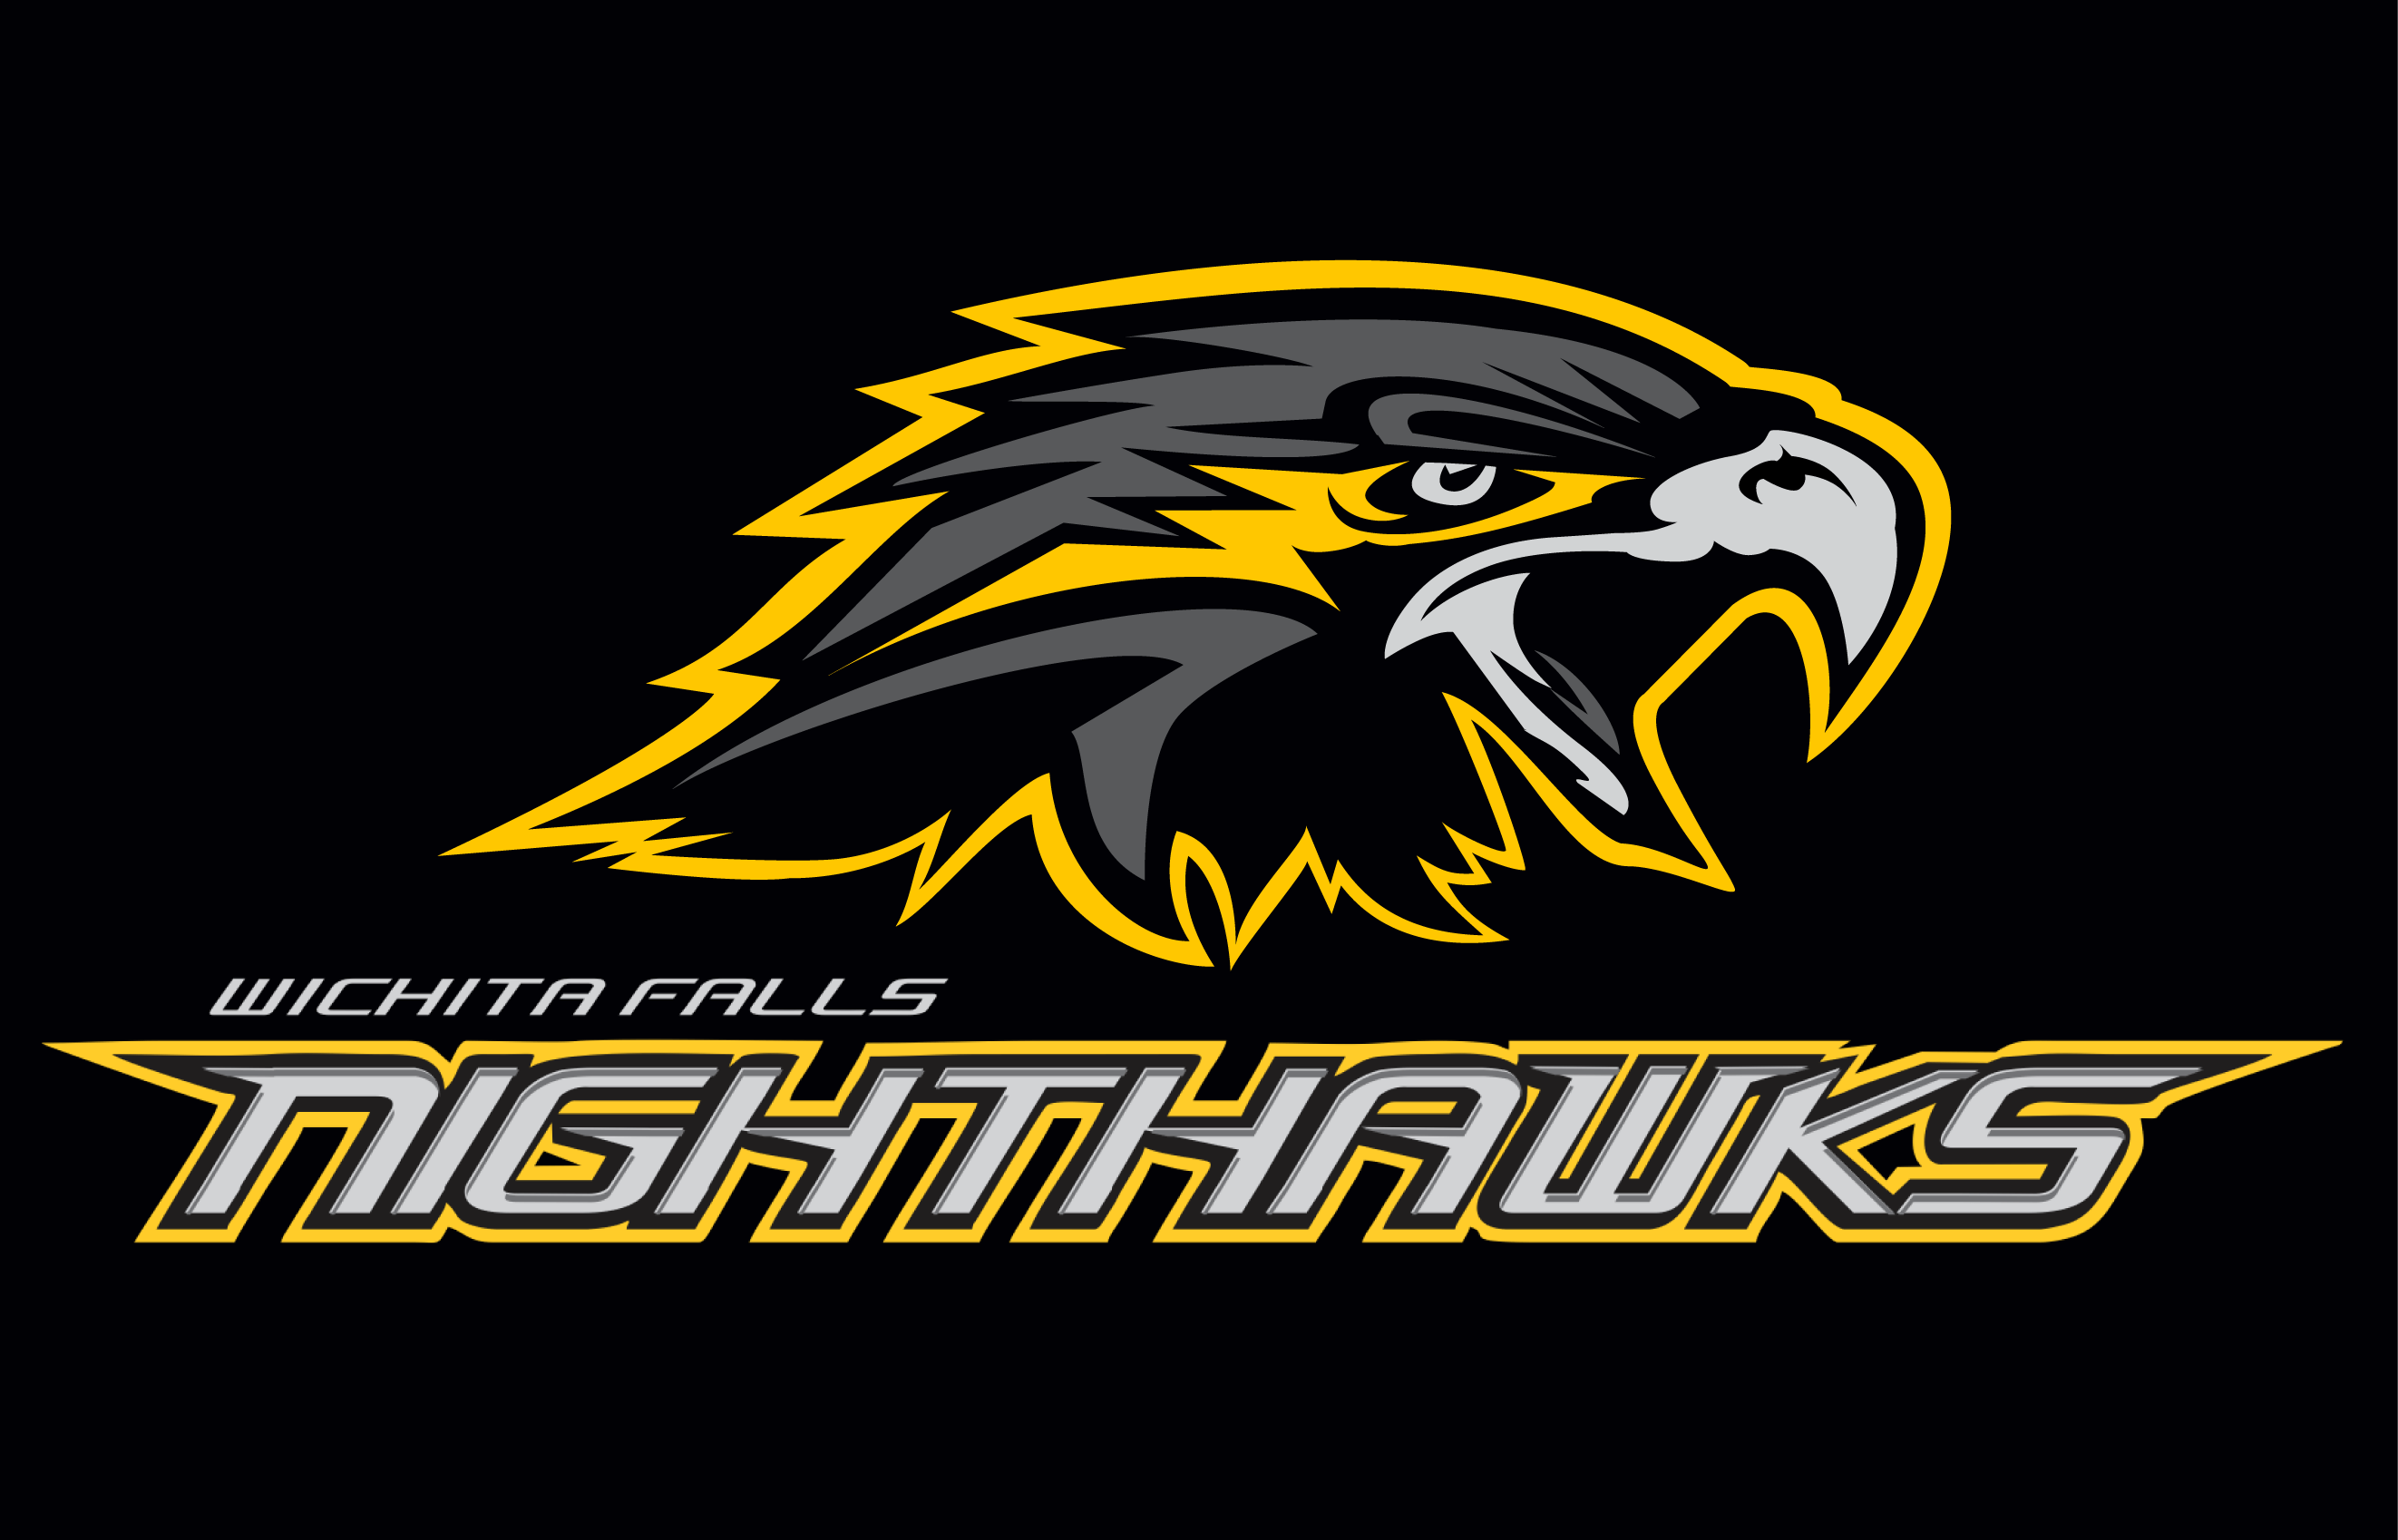 Nighthawks Logo - Wichita Falls Nighthawks Primary Dark Logo Football League